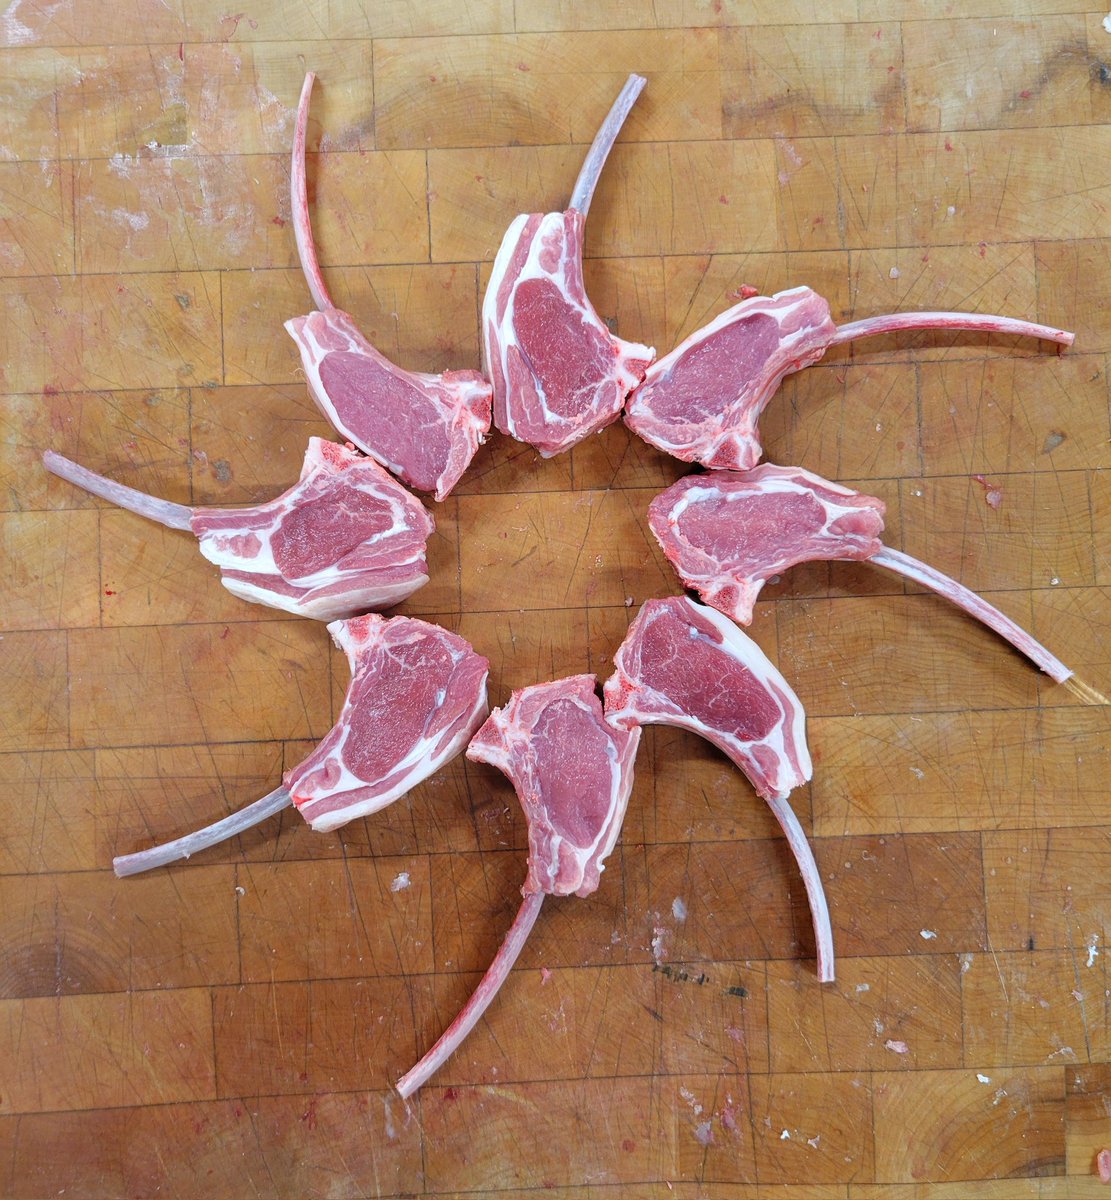 Lamb lollipop chops 🐑
#AcmeMeatMarket
#yegfood